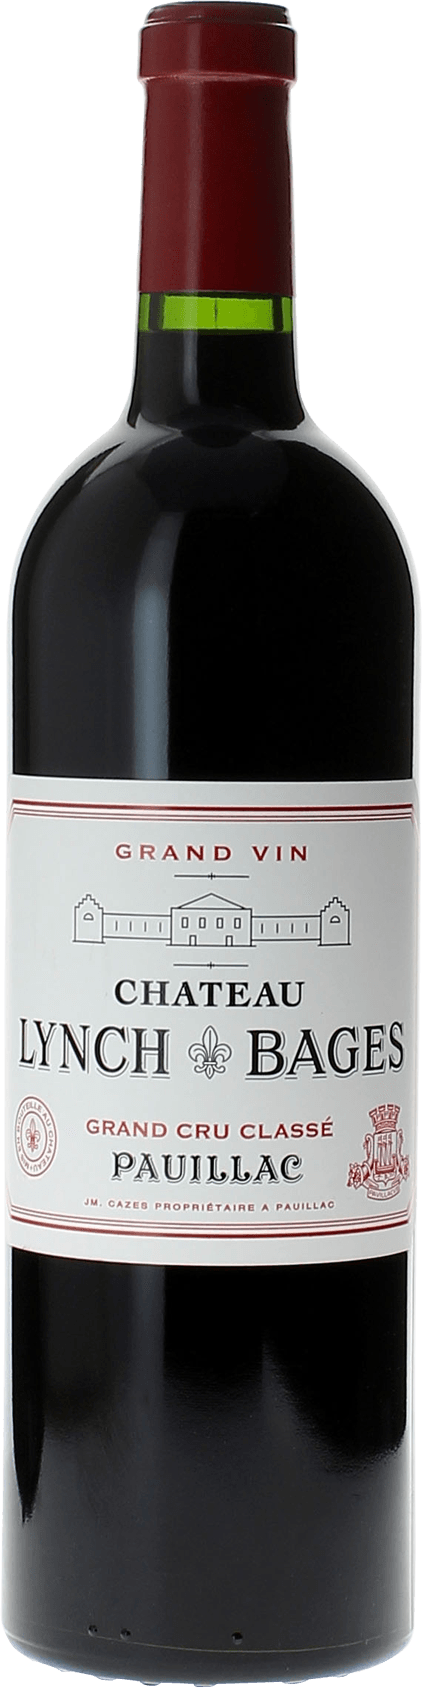 Lynch bages 1992  Pauillac, Bordeaux rouge